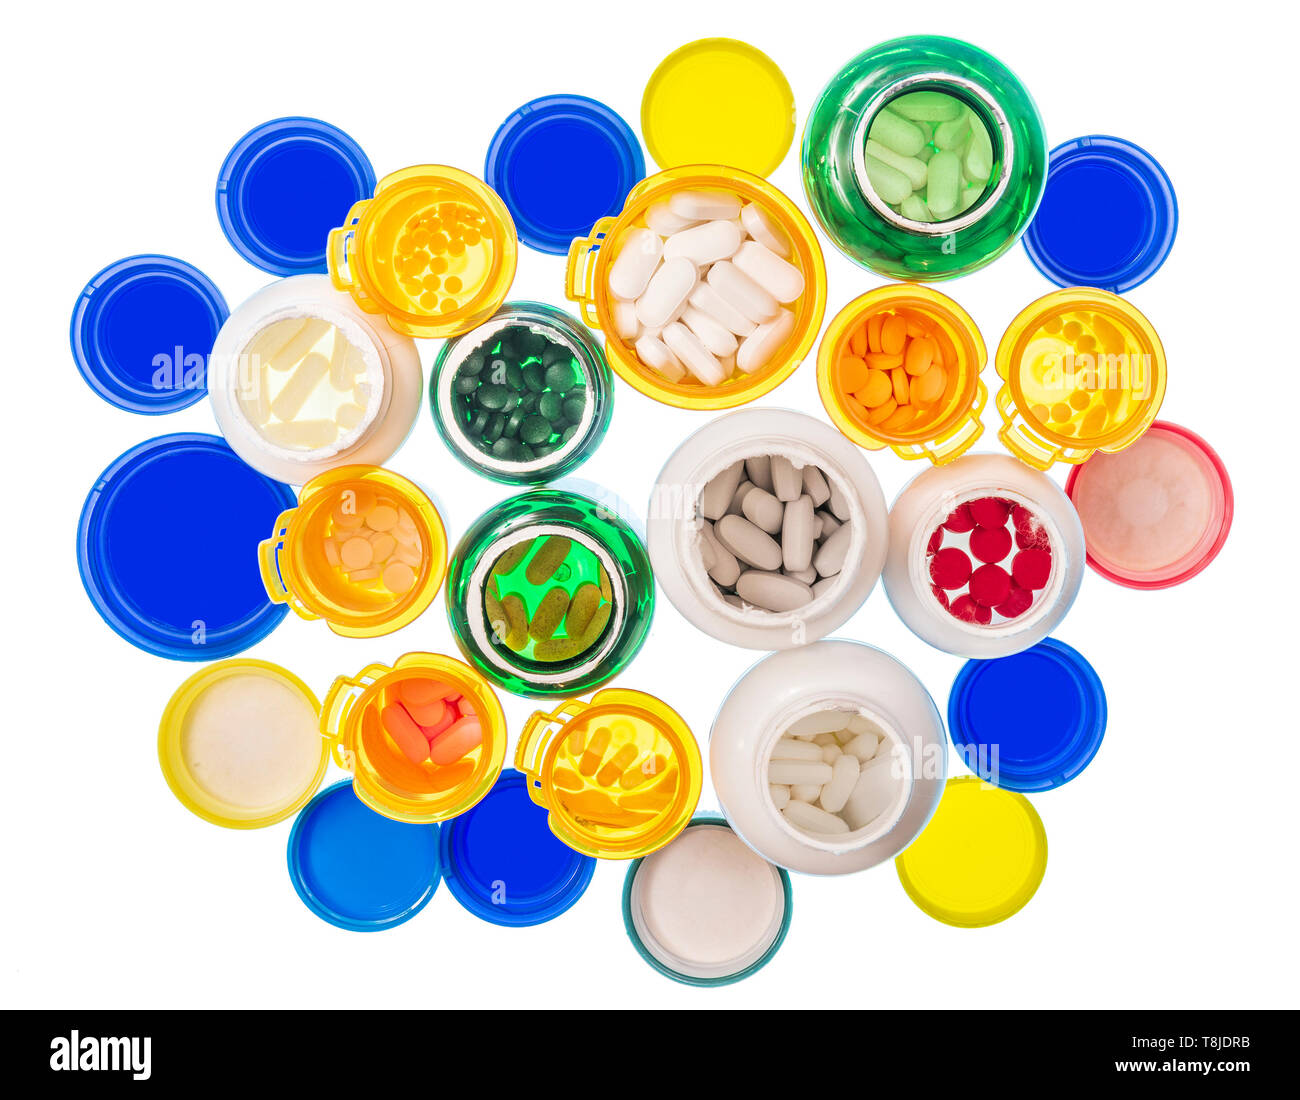 Horizontale abgeschossen, der eine große Gruppe in verschiedenen Größen und Farben der Pille Flaschen mit Pillen gefüllt. Flaschen und Deckel sind auf einem Leuchttisch. W Stockfoto